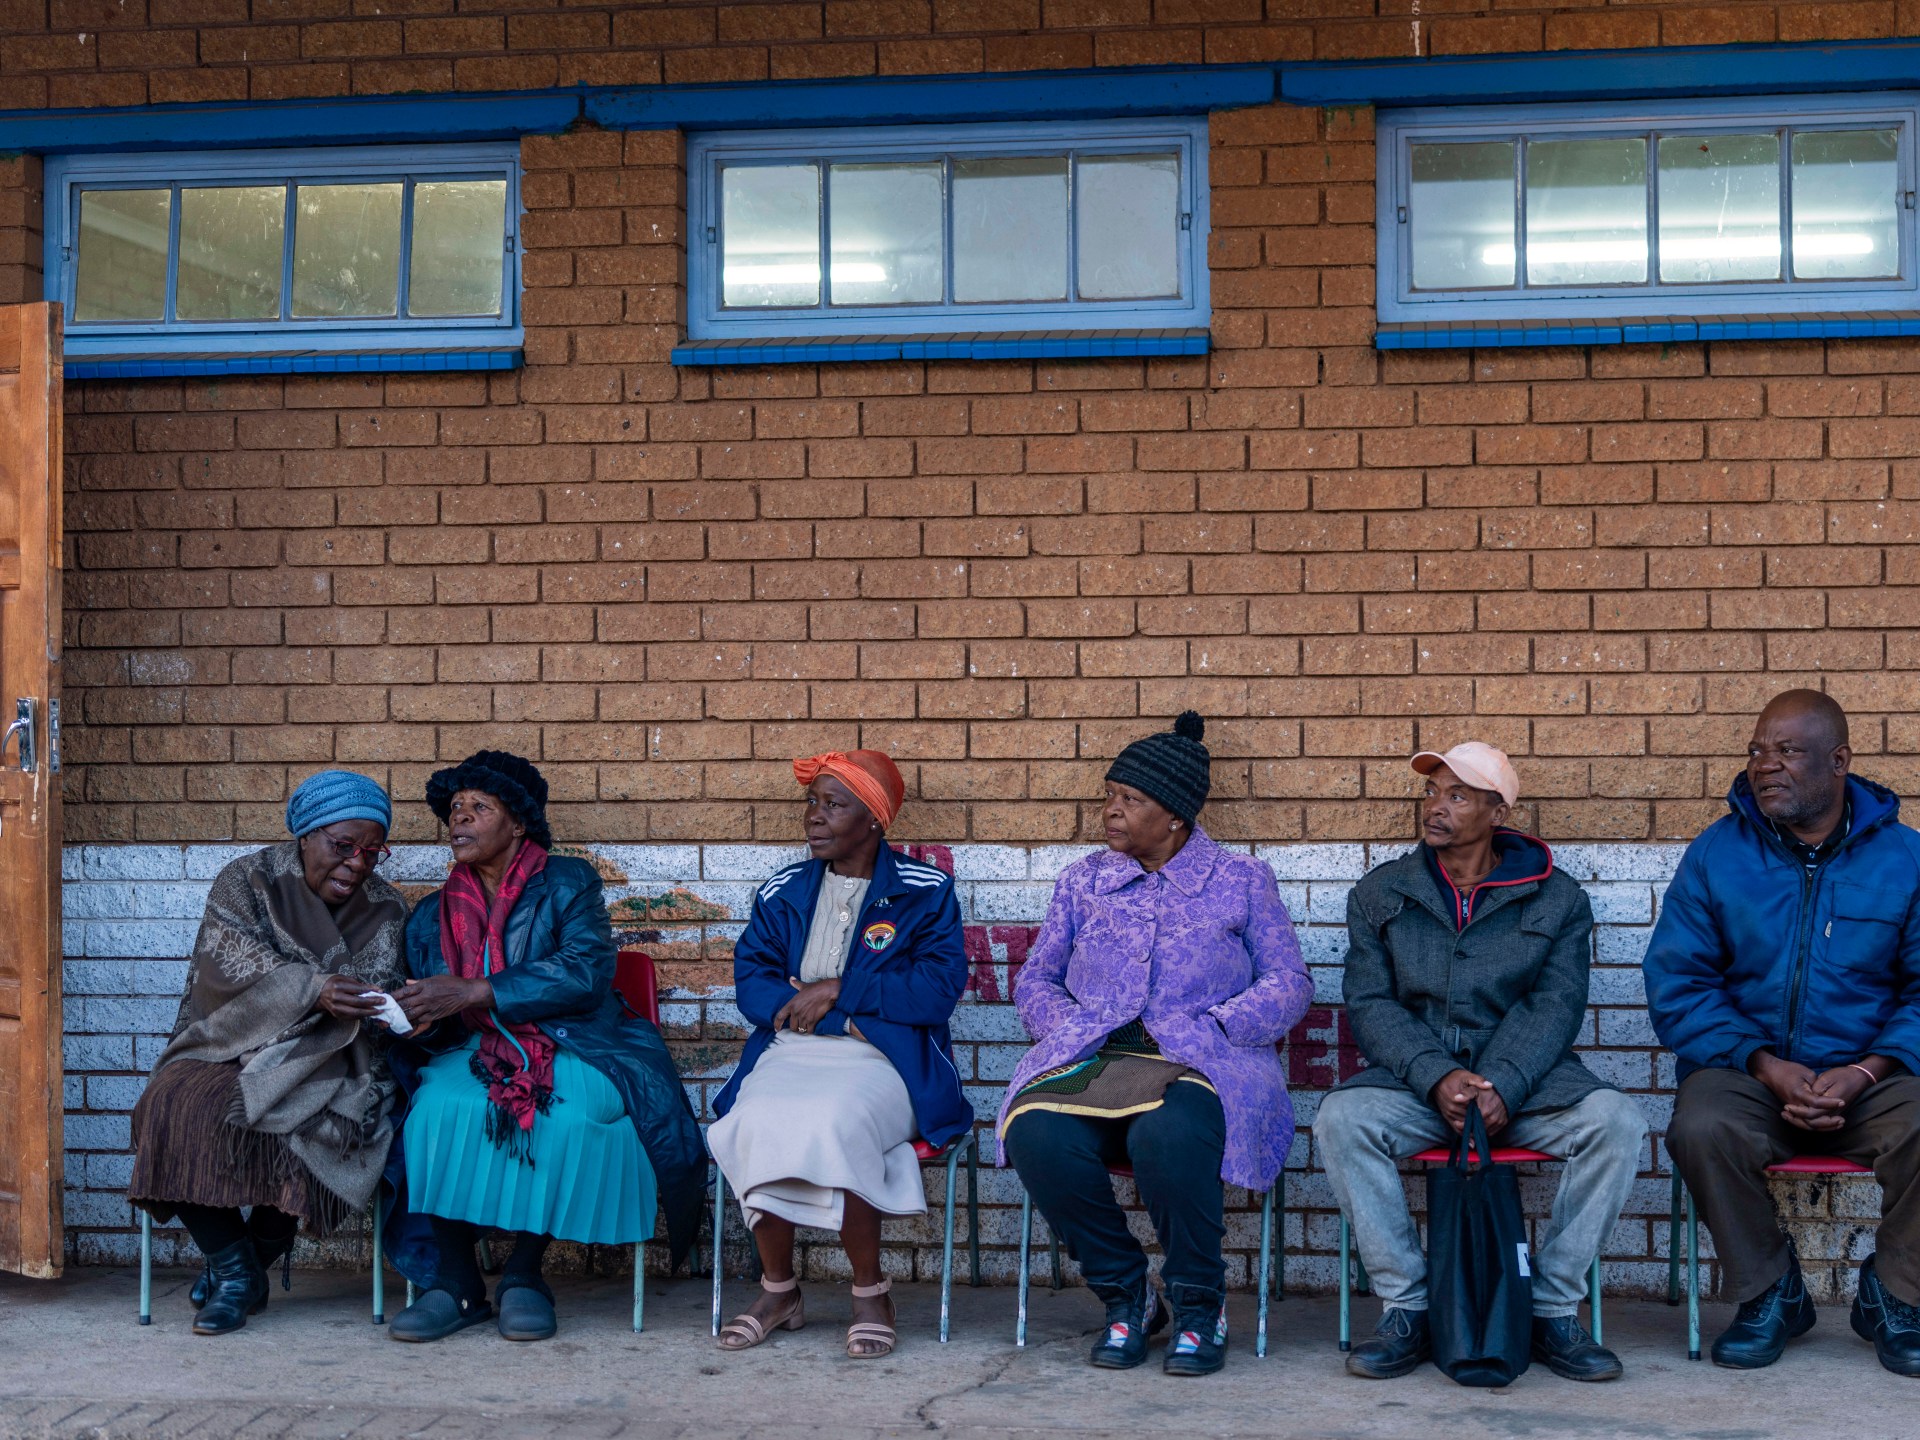 بالصور: جنوب أفريقيا يدلون بأصواتهم في انتخابات محورية |  أخبار الانتخابات